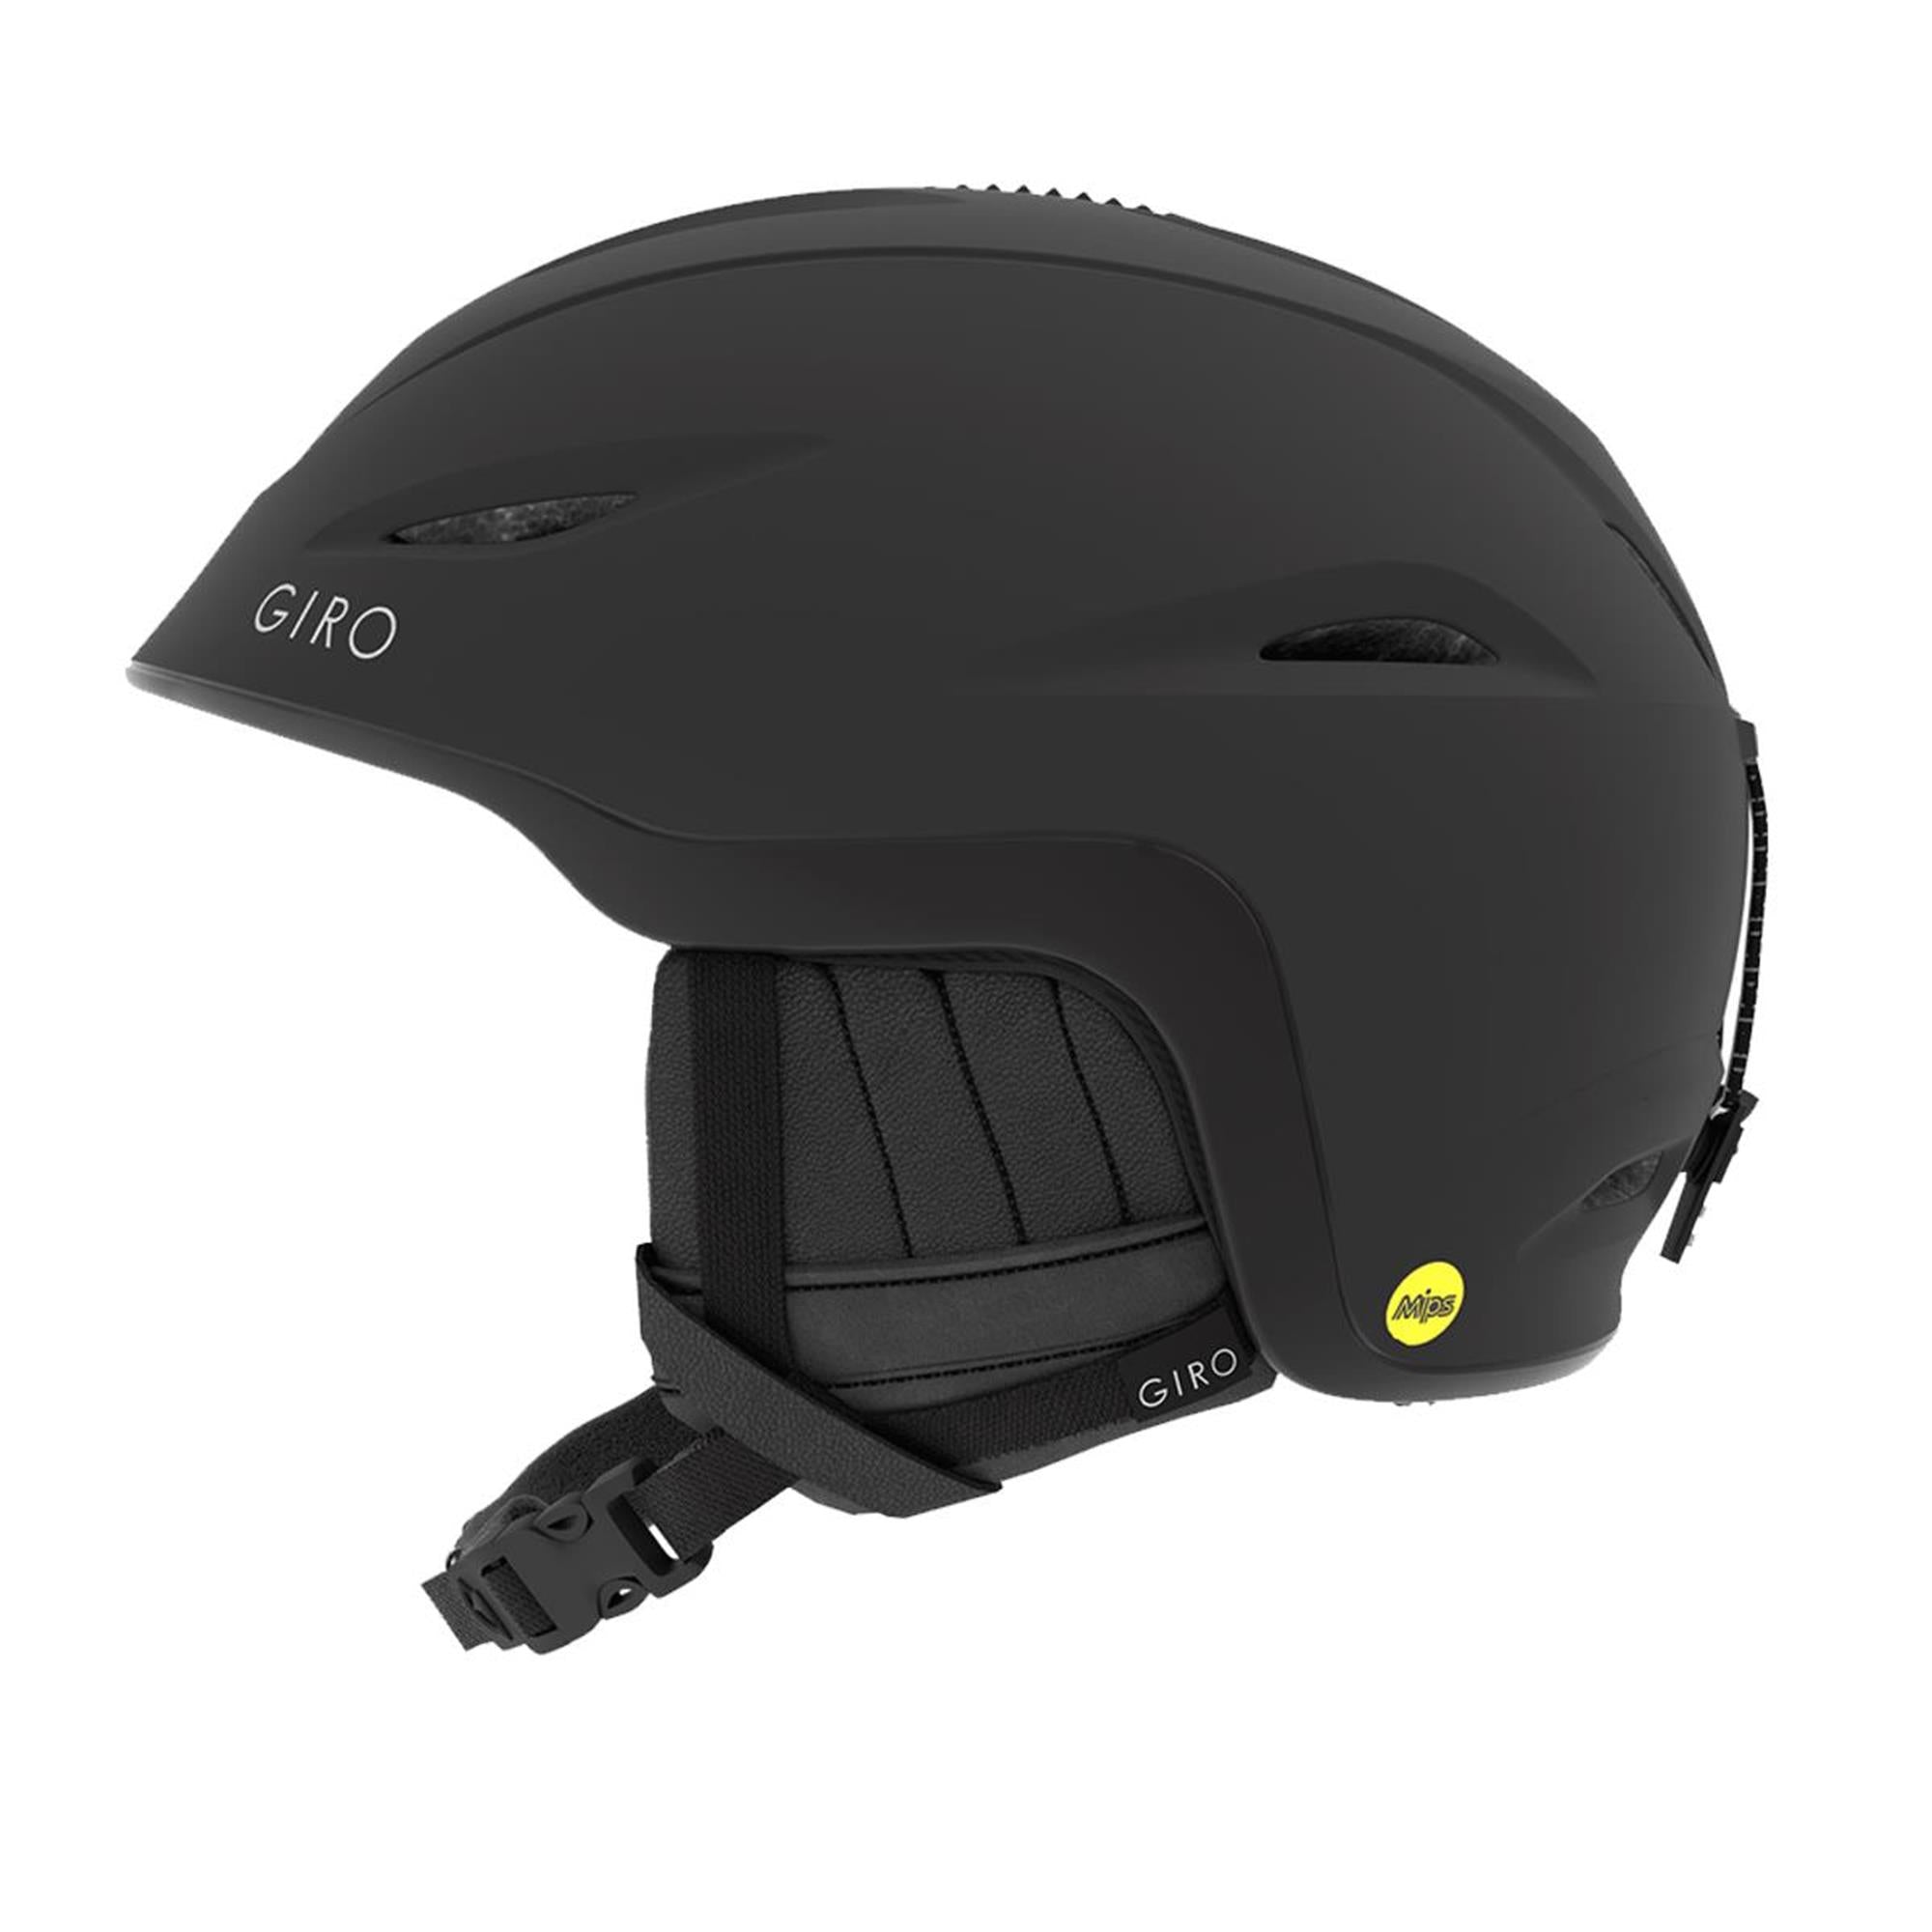 Terra MIPS Women's Snow Helmet – Giro Sport Design